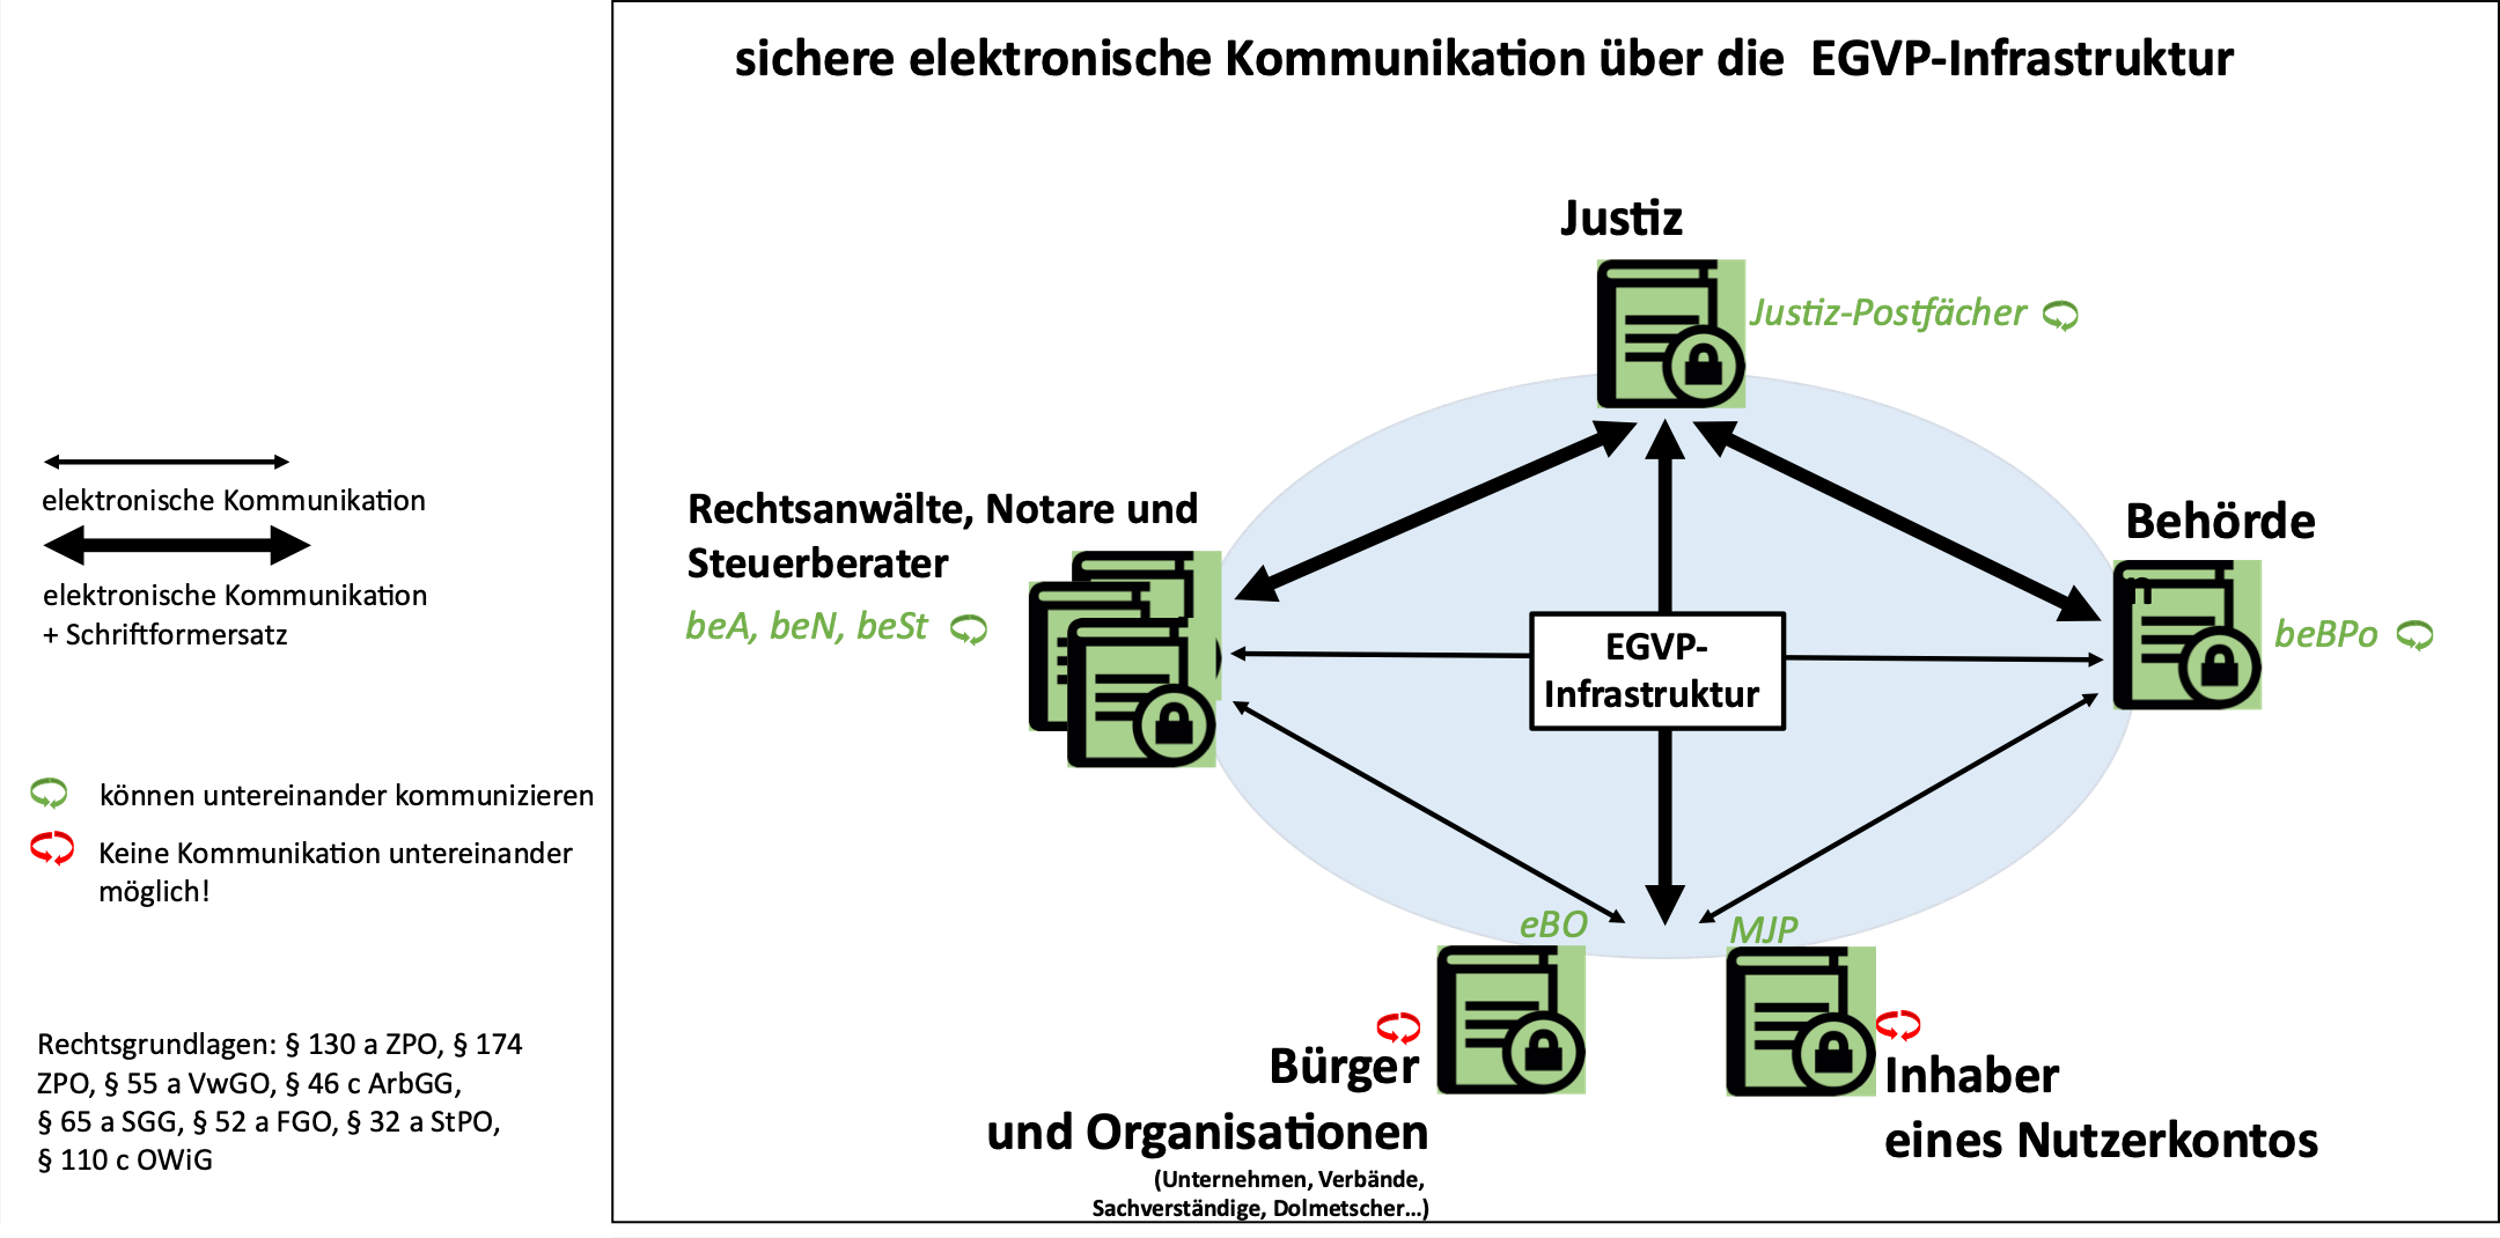 Das Bild zeigt ein Schema für die Kommunikation über EGVP